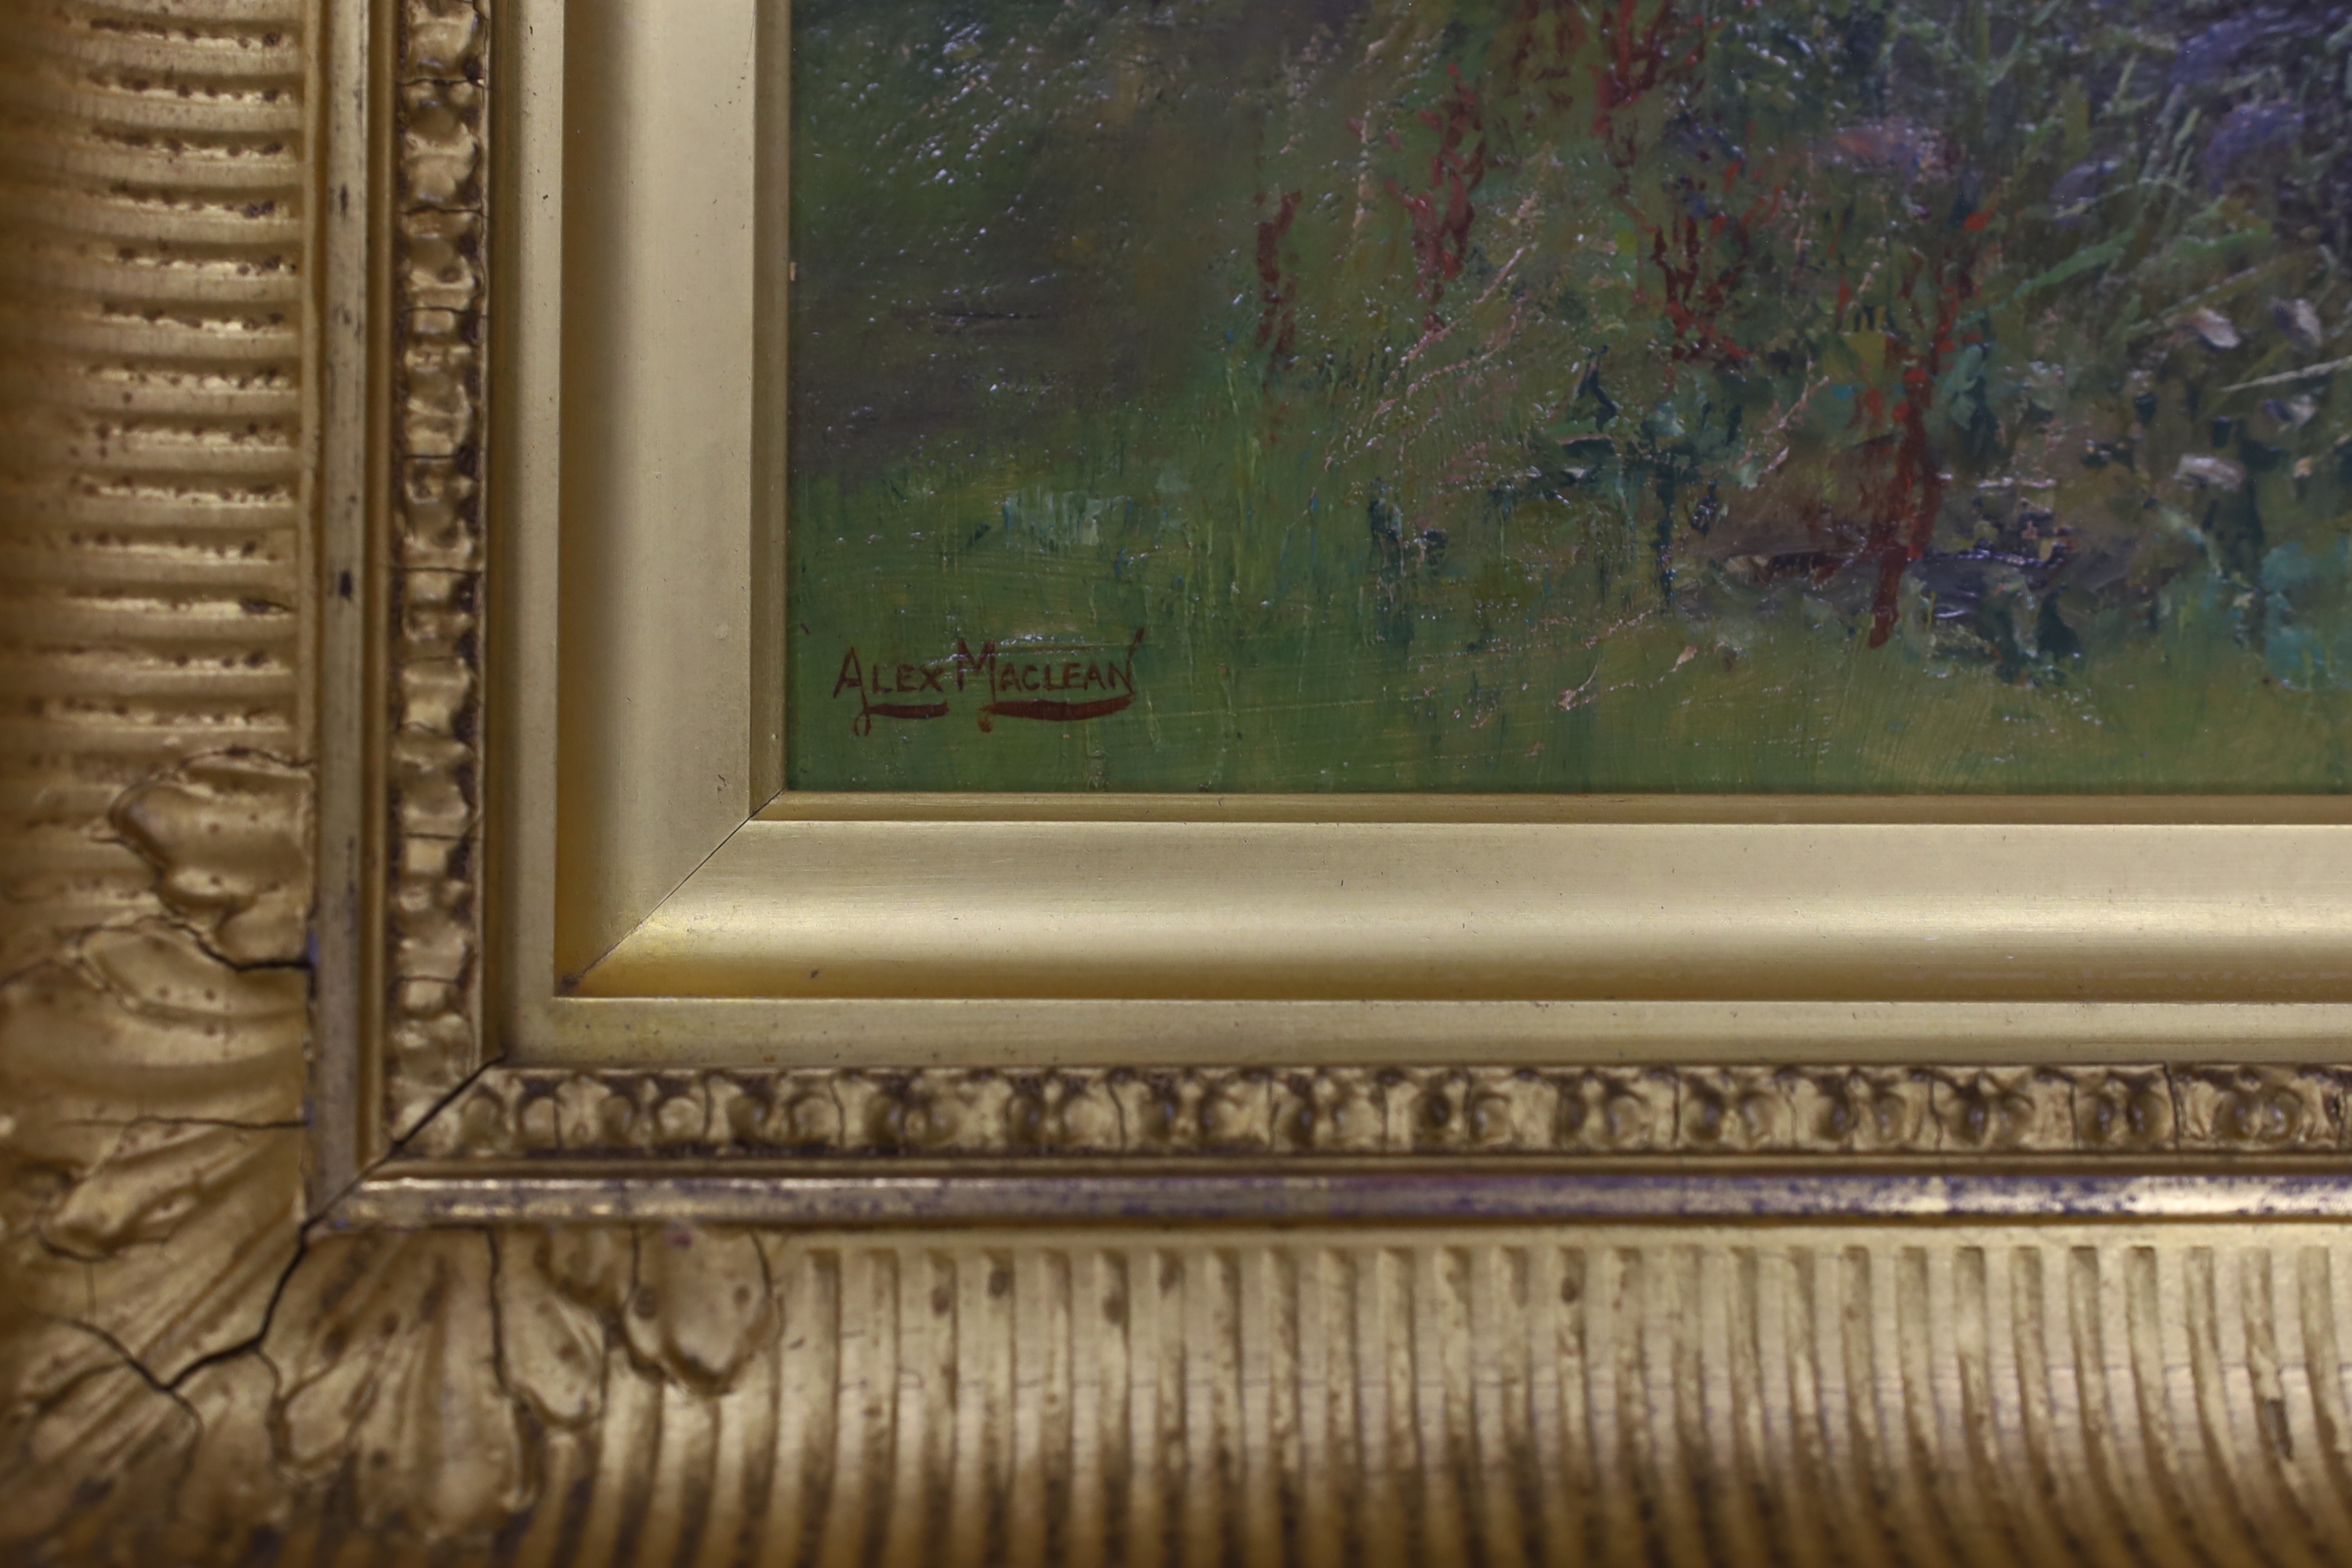 Alex Maclean RBA (1967-1940), oil on board, River landscape, signed, 26 x 36cm, ornate gilt framed